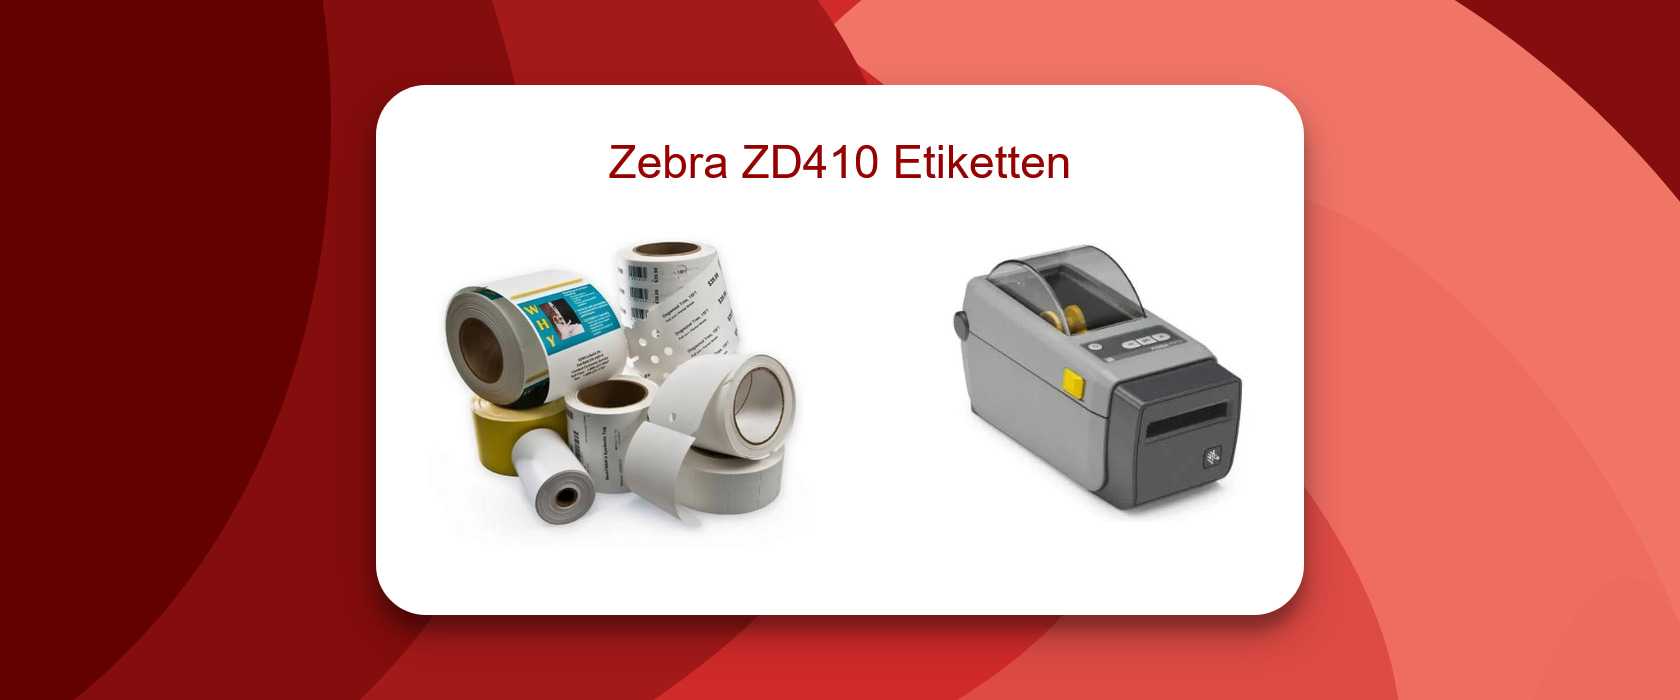 Zebra ZD410 Etiketten